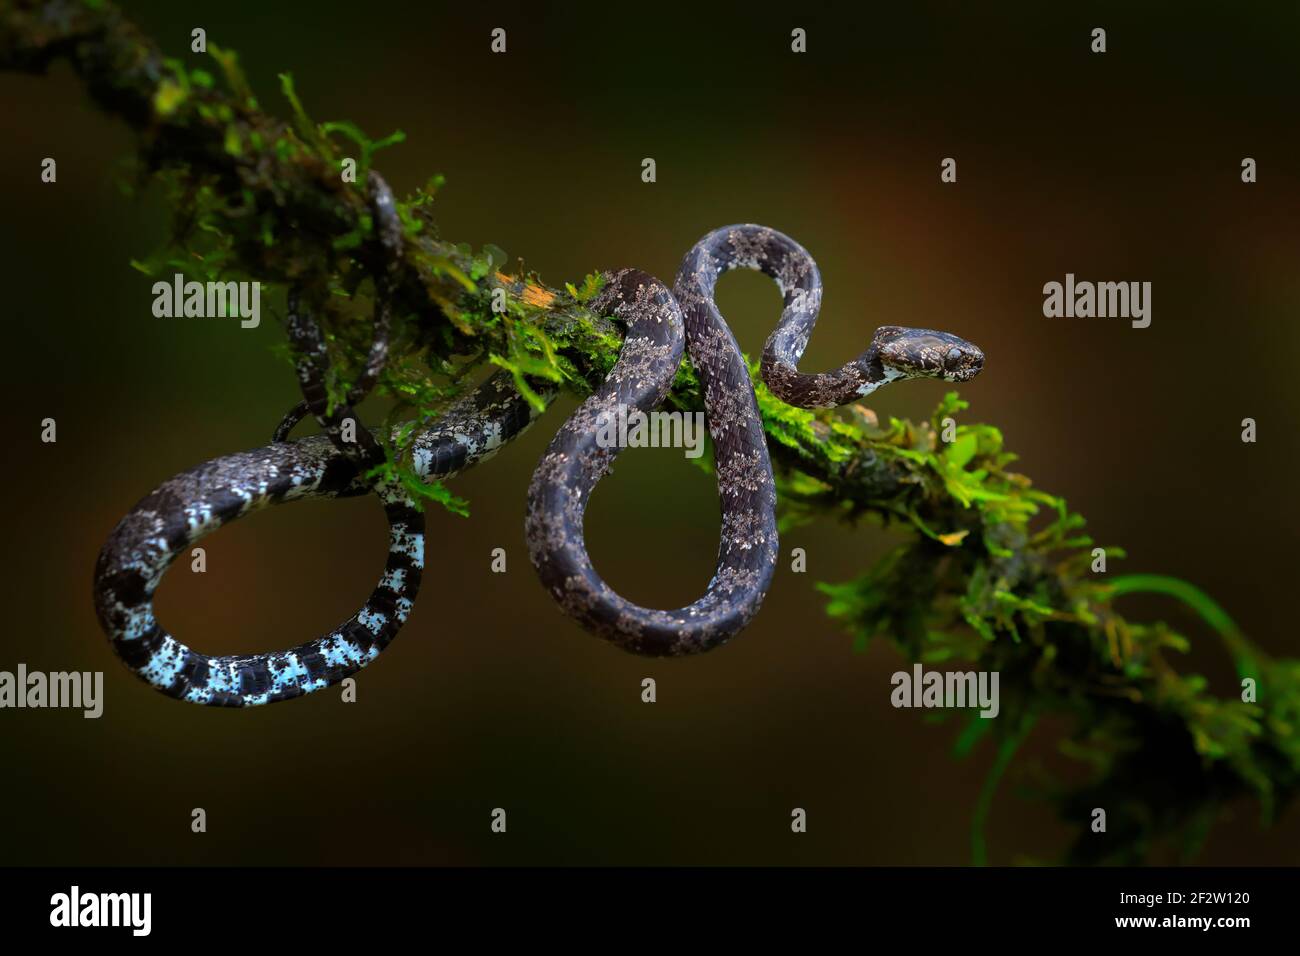 Sueur d'escargots nuageux, Sibon nebulatus, serpent, blanc de mousse verte. Serpent non venimeux dans l'habitat naturel. Animal toxique d'Amérique du Sud. Jaune Banque D'Images